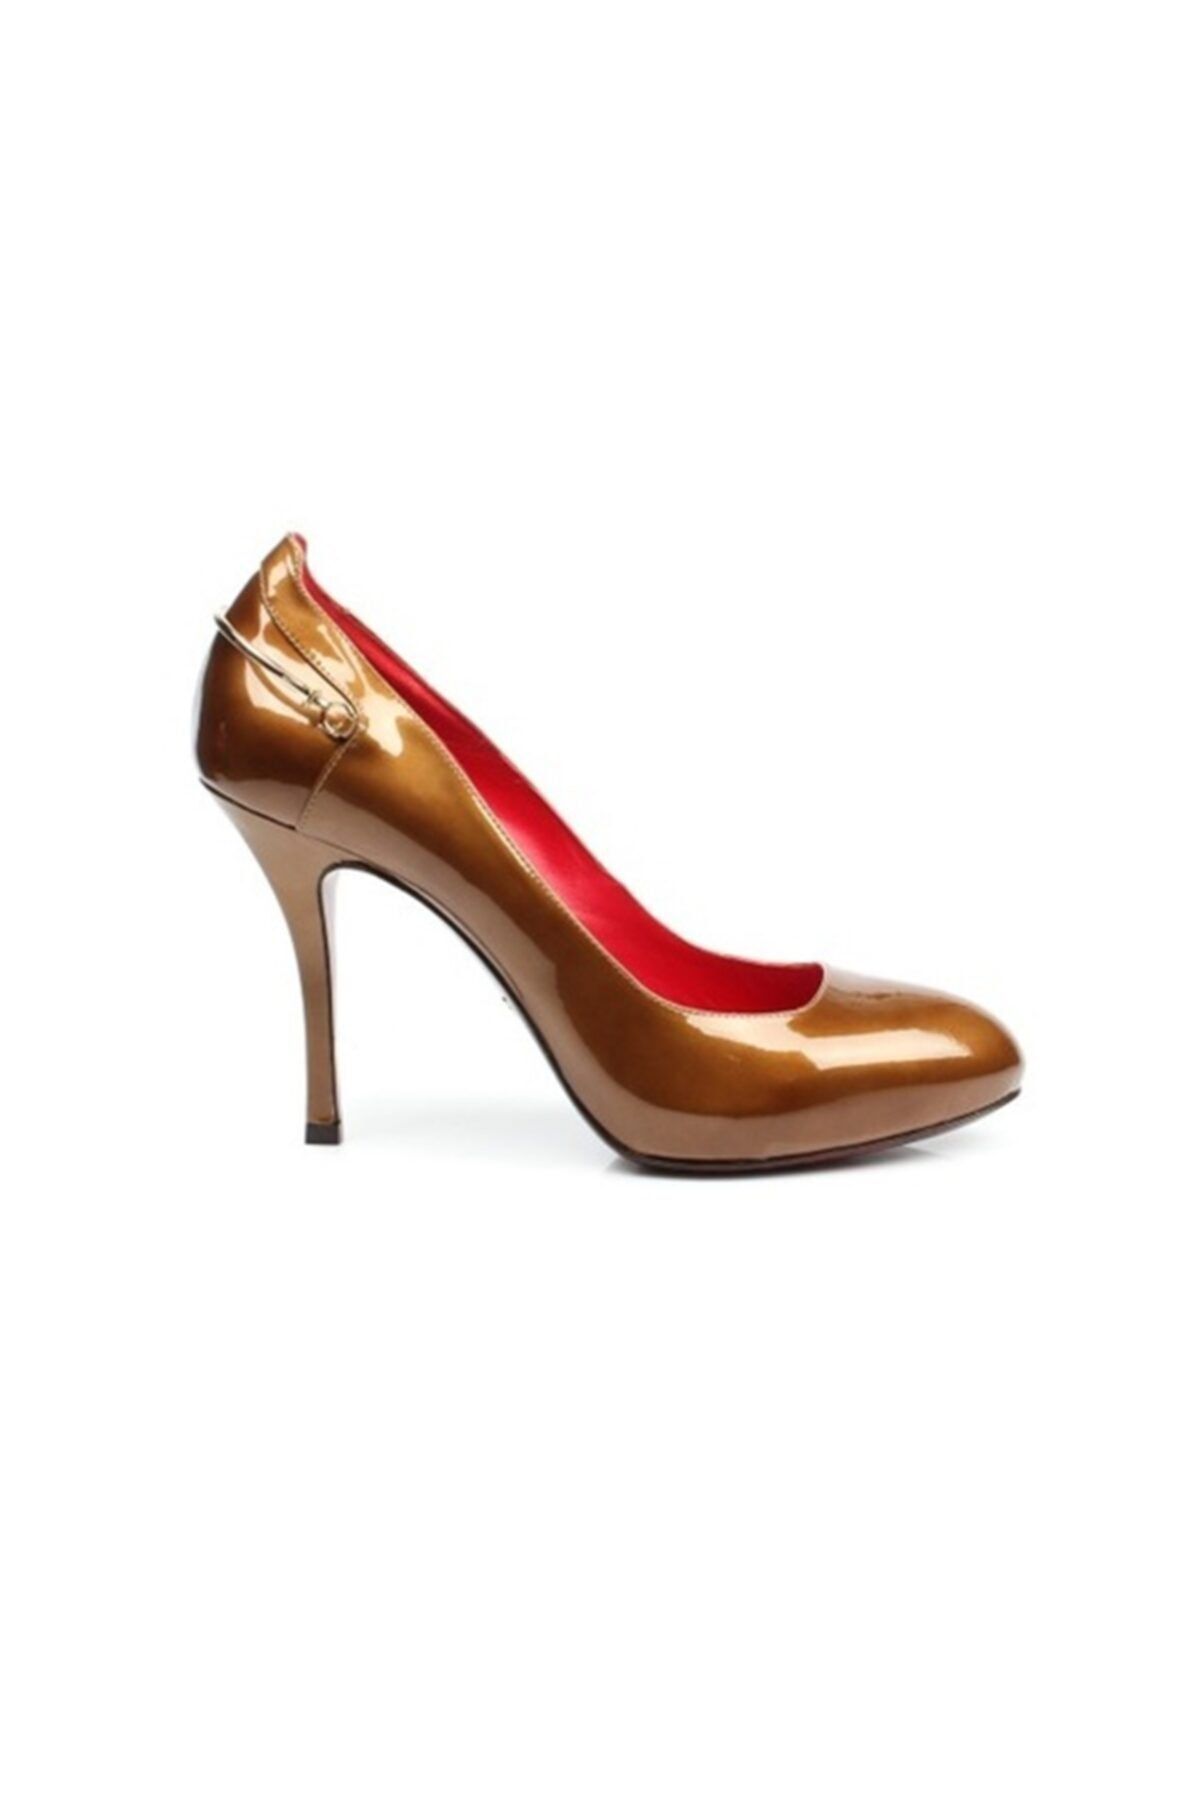 Cesare Paciotti Kadın Topuklu Ayakkabı Altın 243490